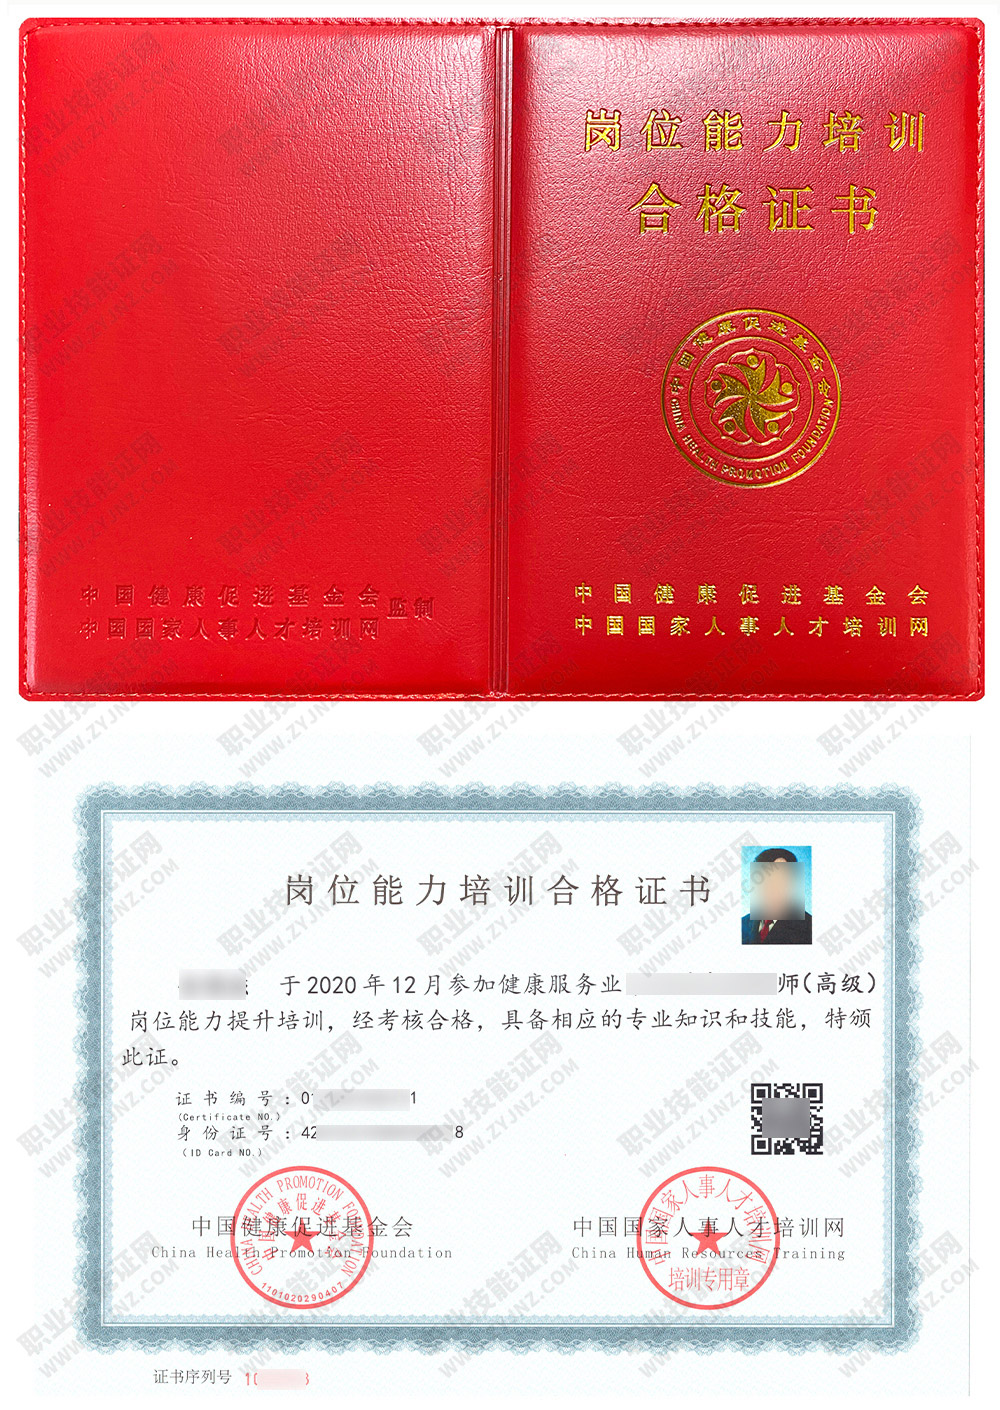 中国国家人事人才培训网 中医全科康复师 岗位能力培训合格证书